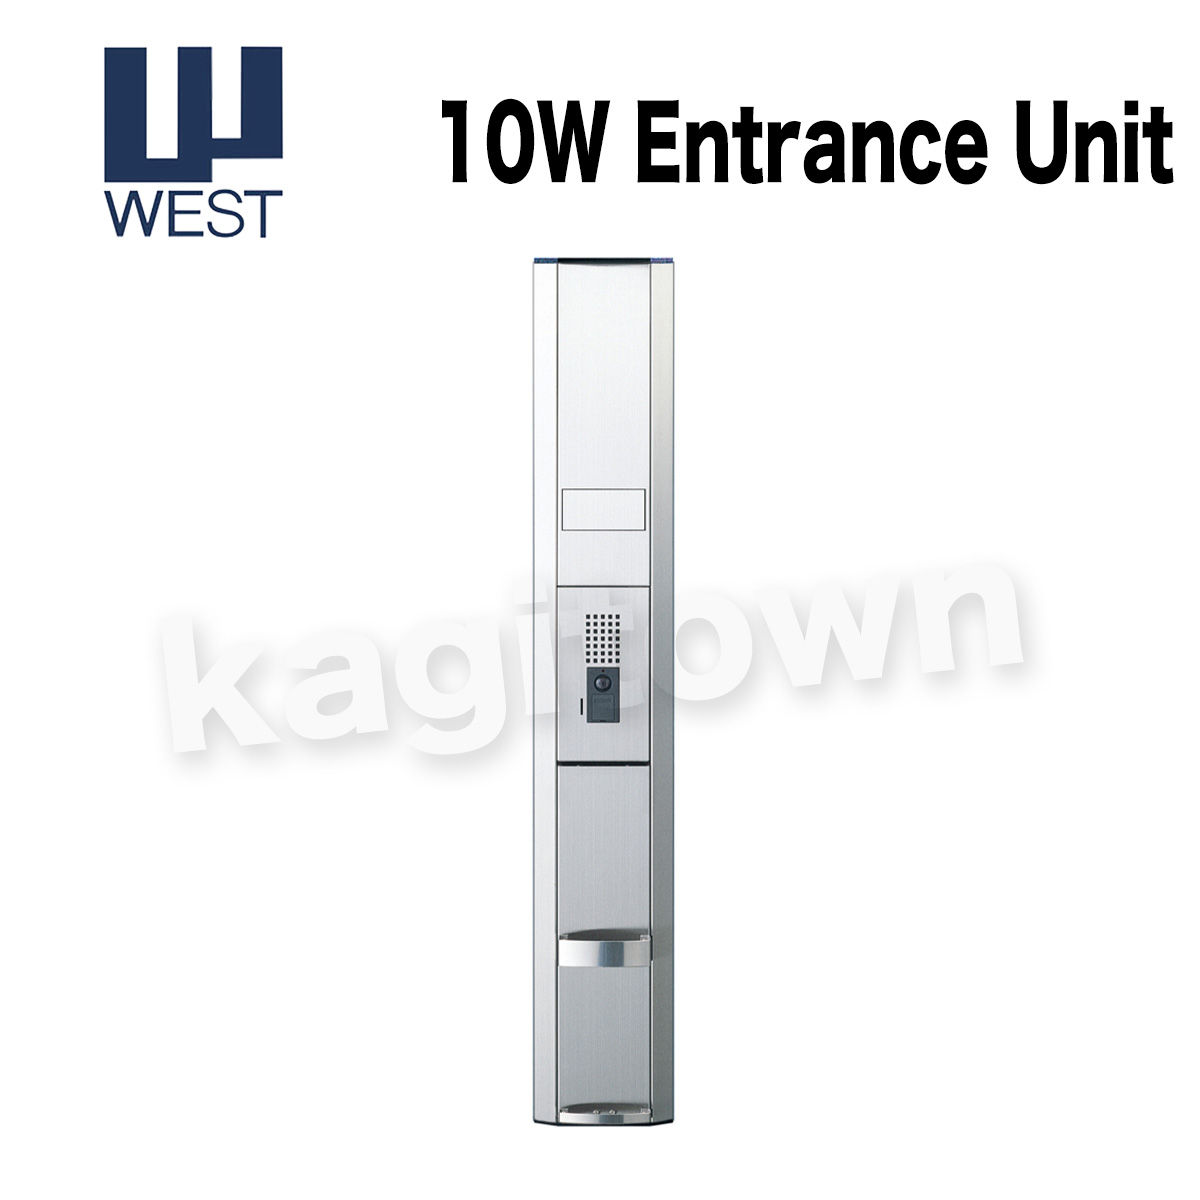 WEST 【ウエスト】玄関ユニット[WEST-10W]10W Entrance Unit パネルのみインターホン付属なし